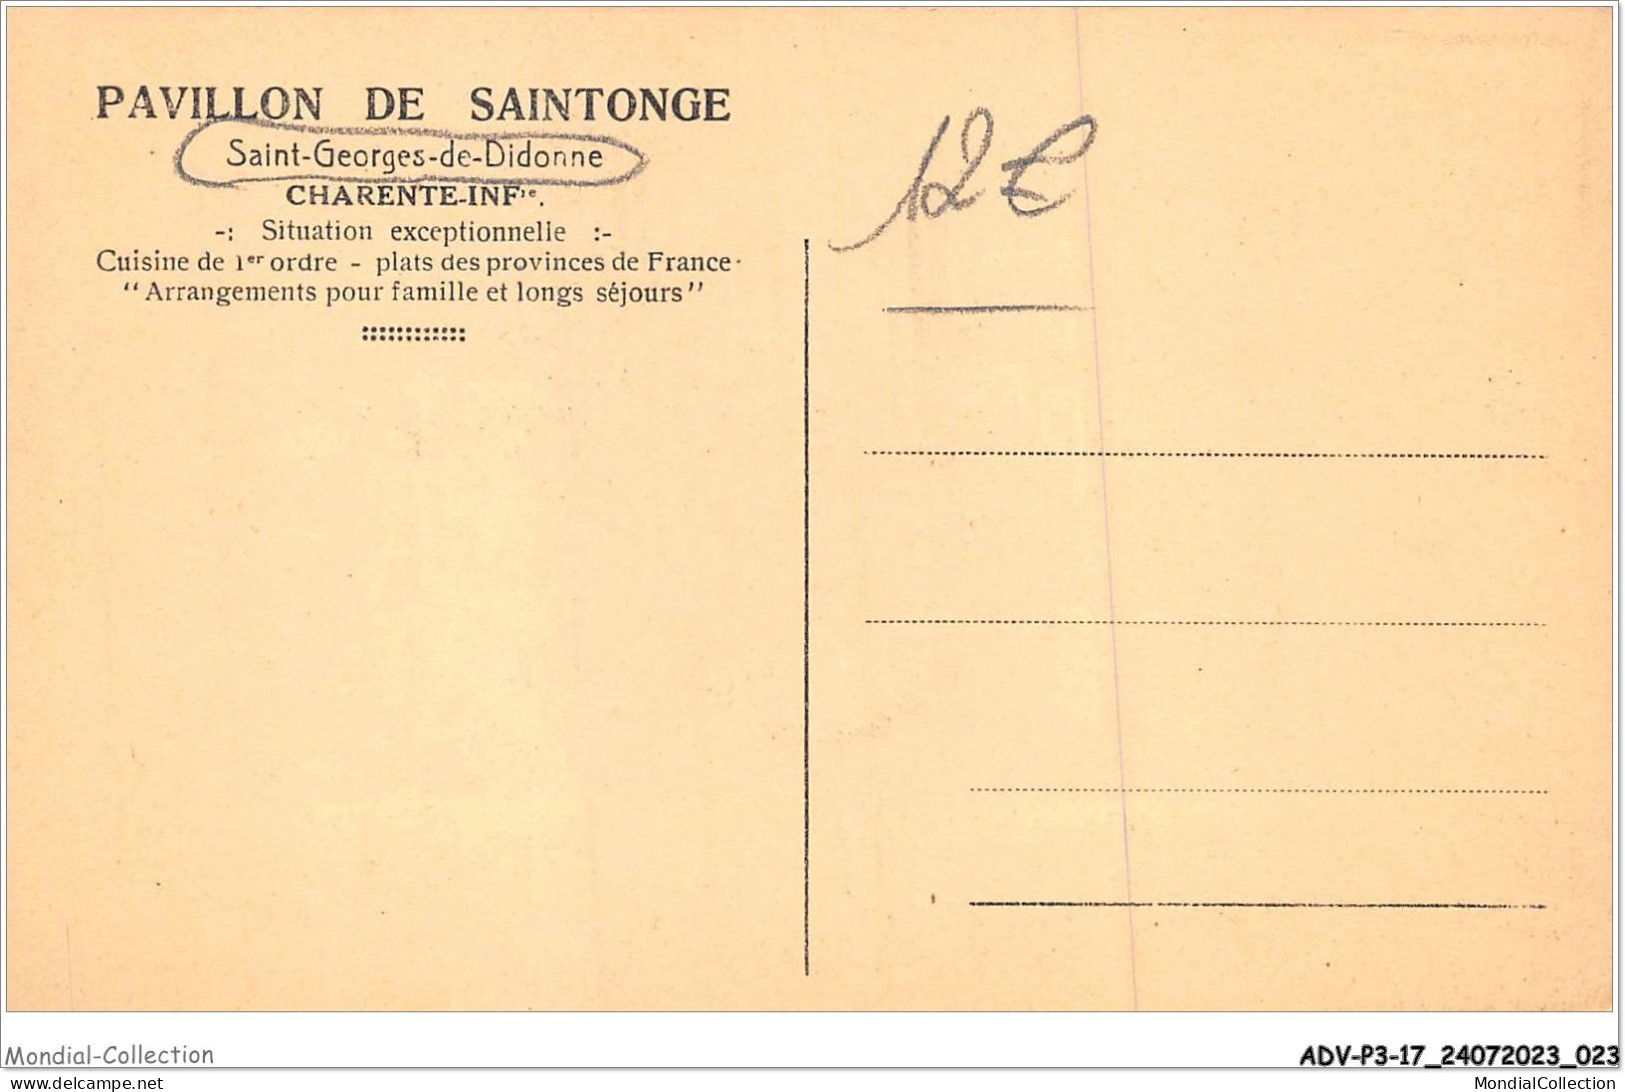 ADVP3-17-0198 - SAINT-GEORGE-DE-DIDONNE - PECHERIE DU PAVILLON DE SAINTONGE - Charente-inf - Saint-Georges-de-Didonne